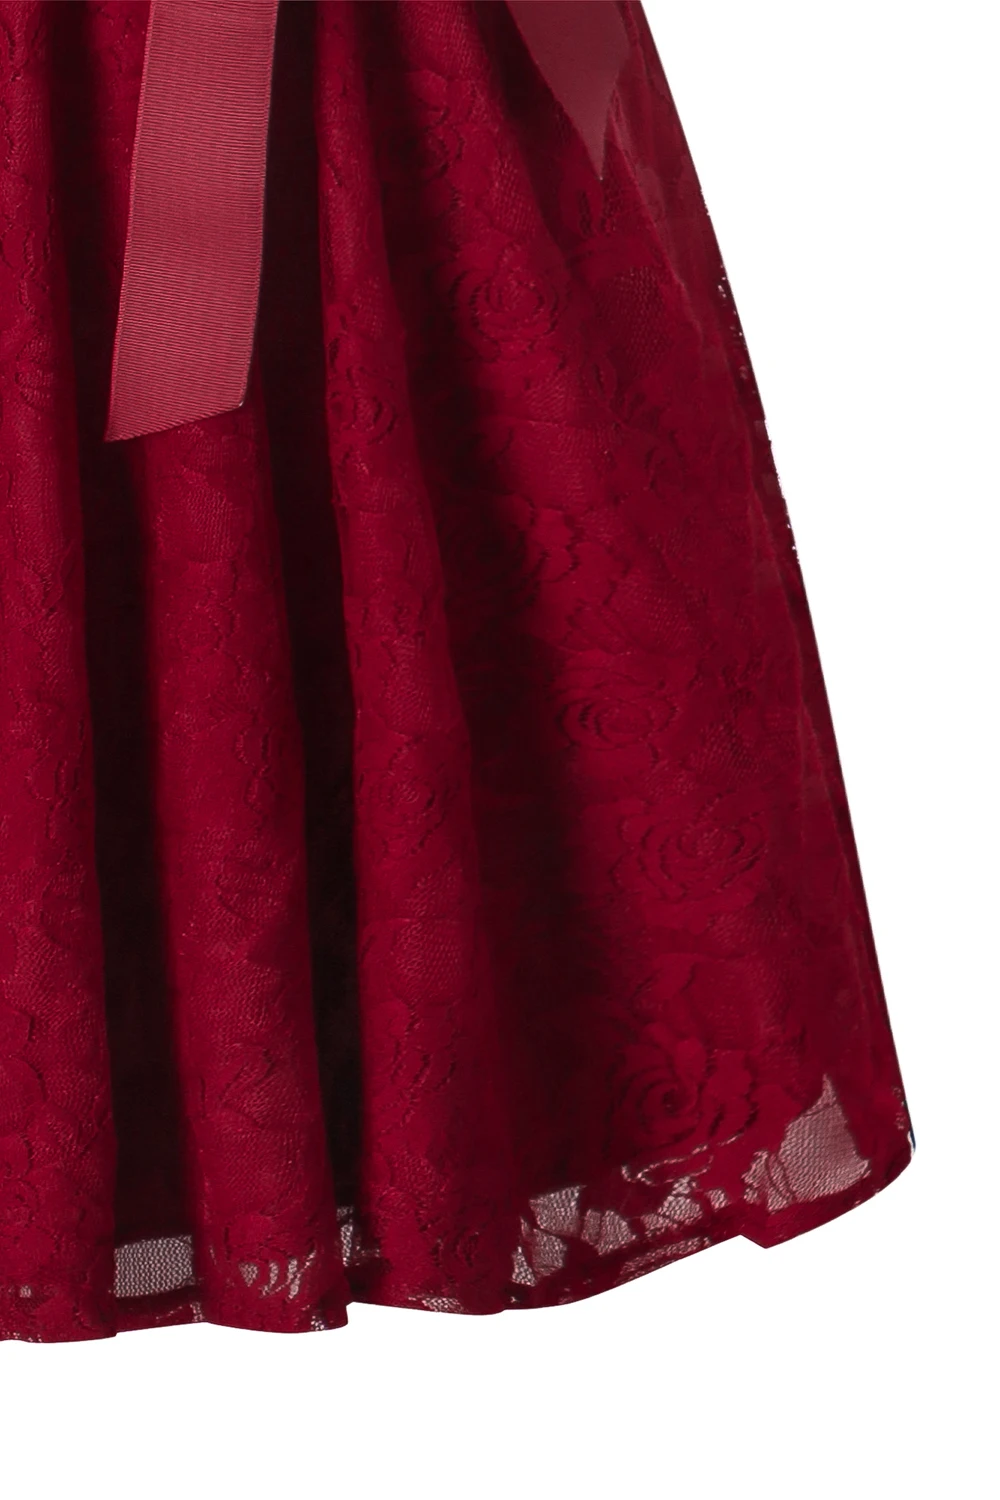 Бордовые полные кружевные коктейльные платья сексуальное короткое платье на выпускной торжественное платье маленькое черное платье женское короткое платье для выпускного